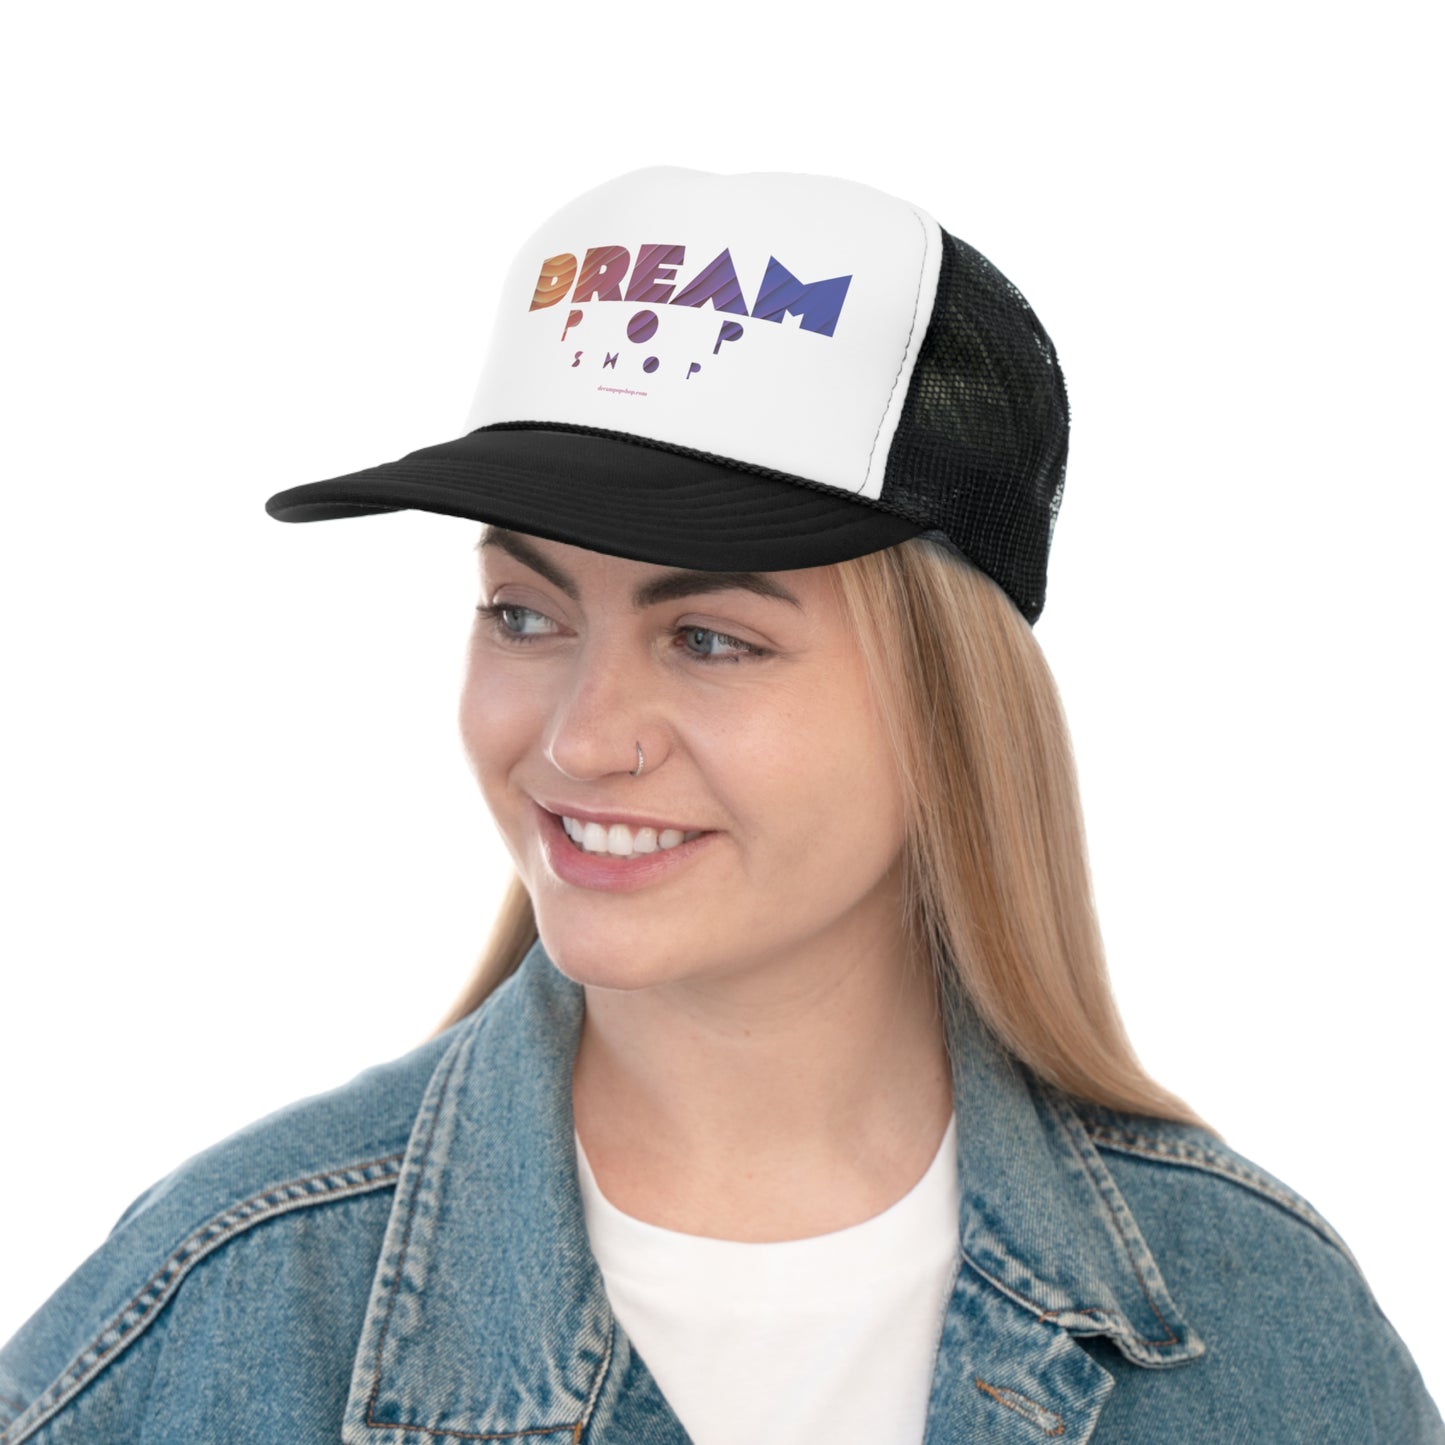 Dream Pop Shop Trucker Caps